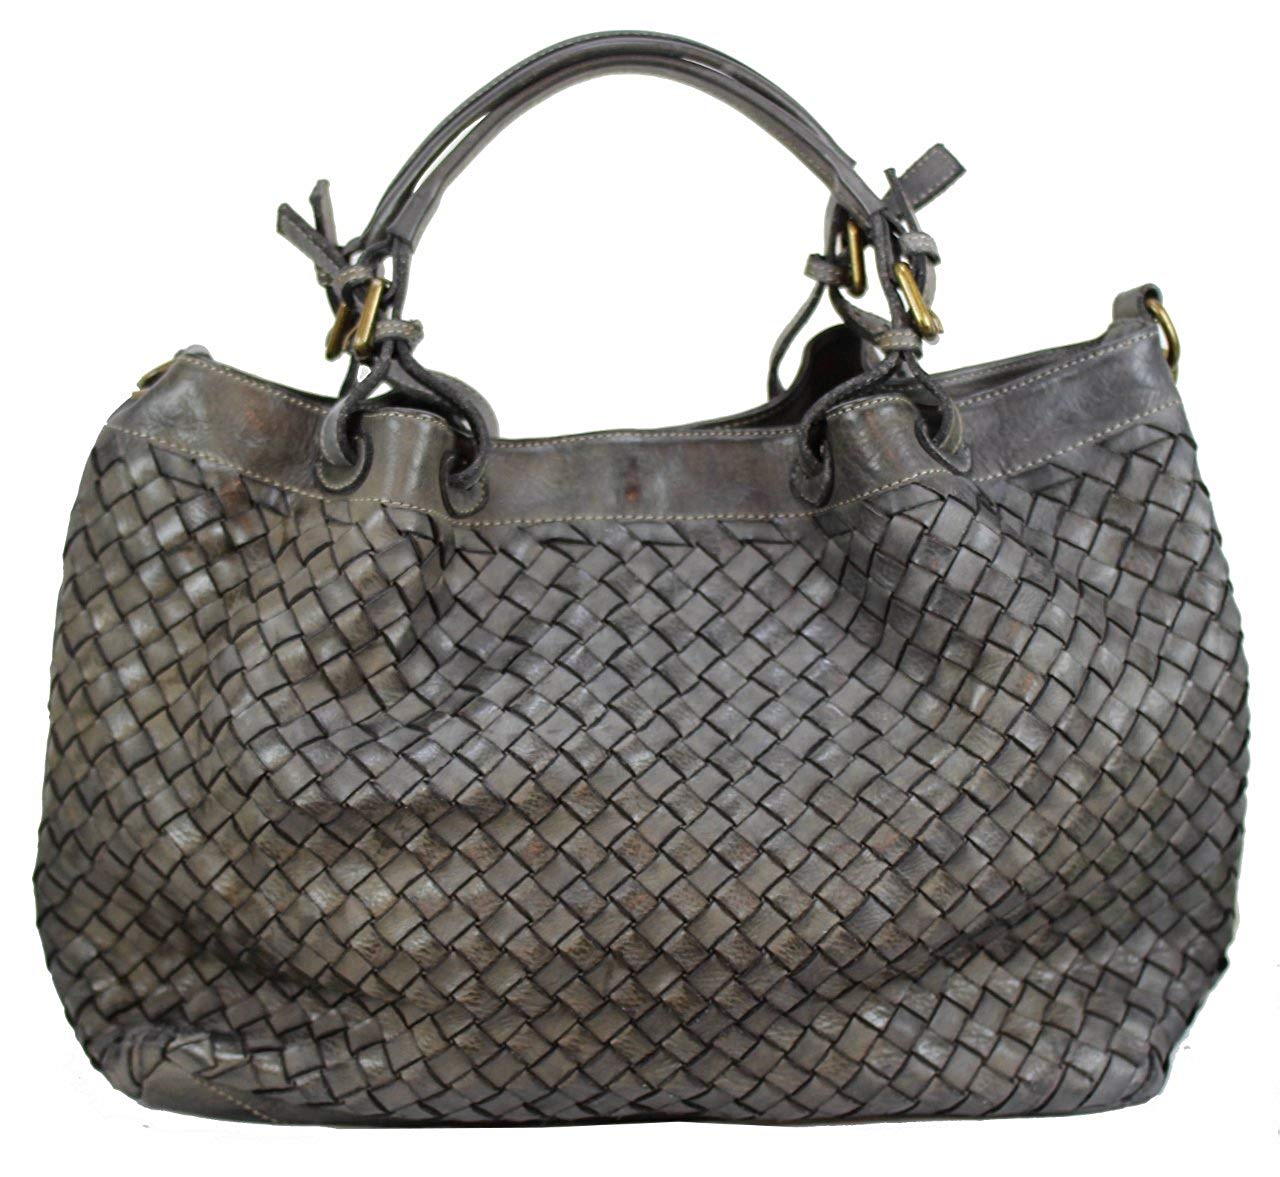 BZNA Bag Rene grey Italy Designer geflochten Damen Handtasche Schultertasche Tasche Schafsleder Shopper Neu